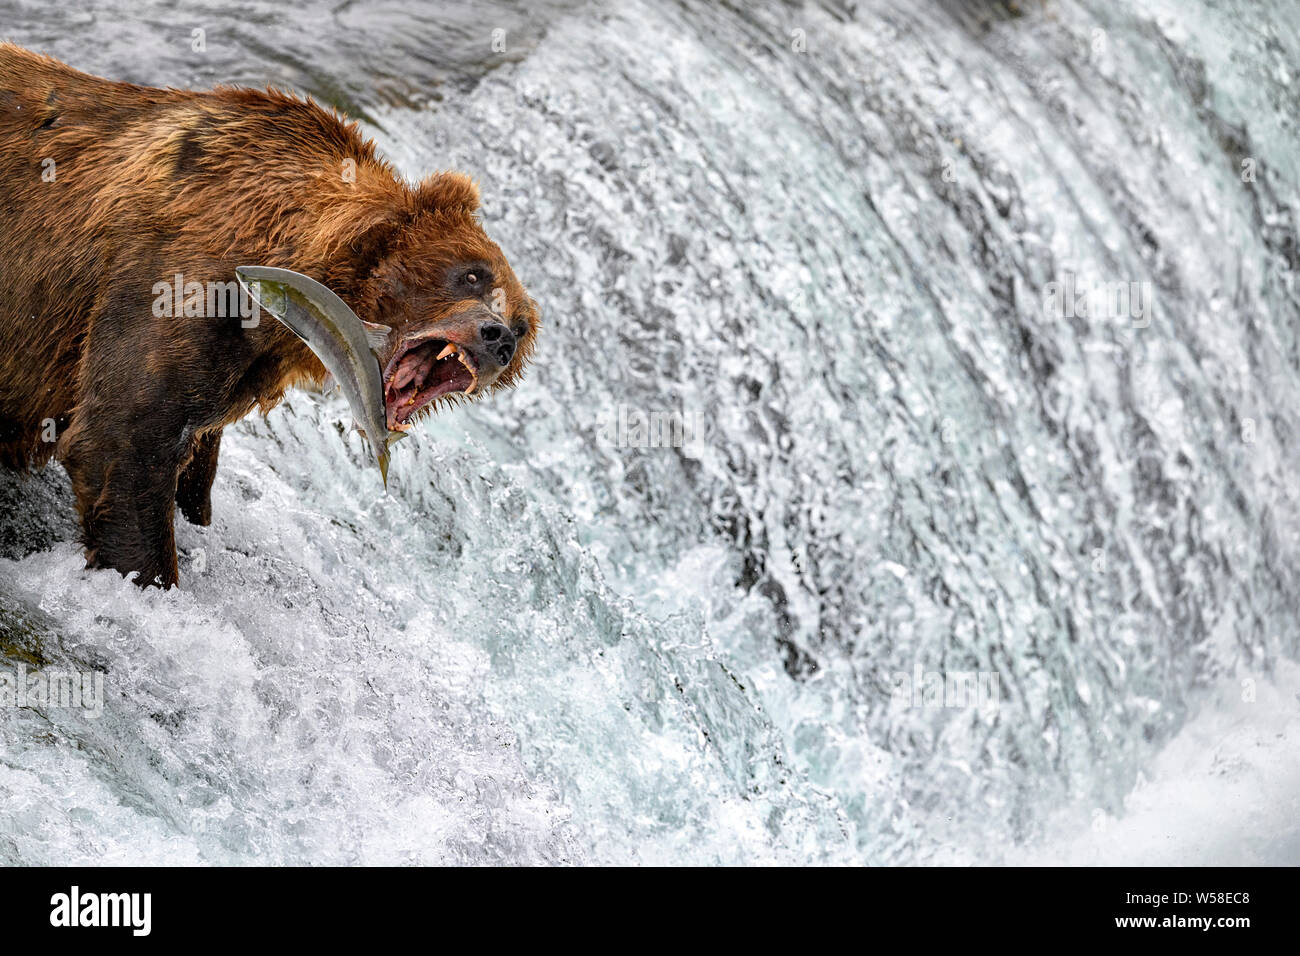 Bear fishing for salmon in waterfall, Alaska Stock Photo